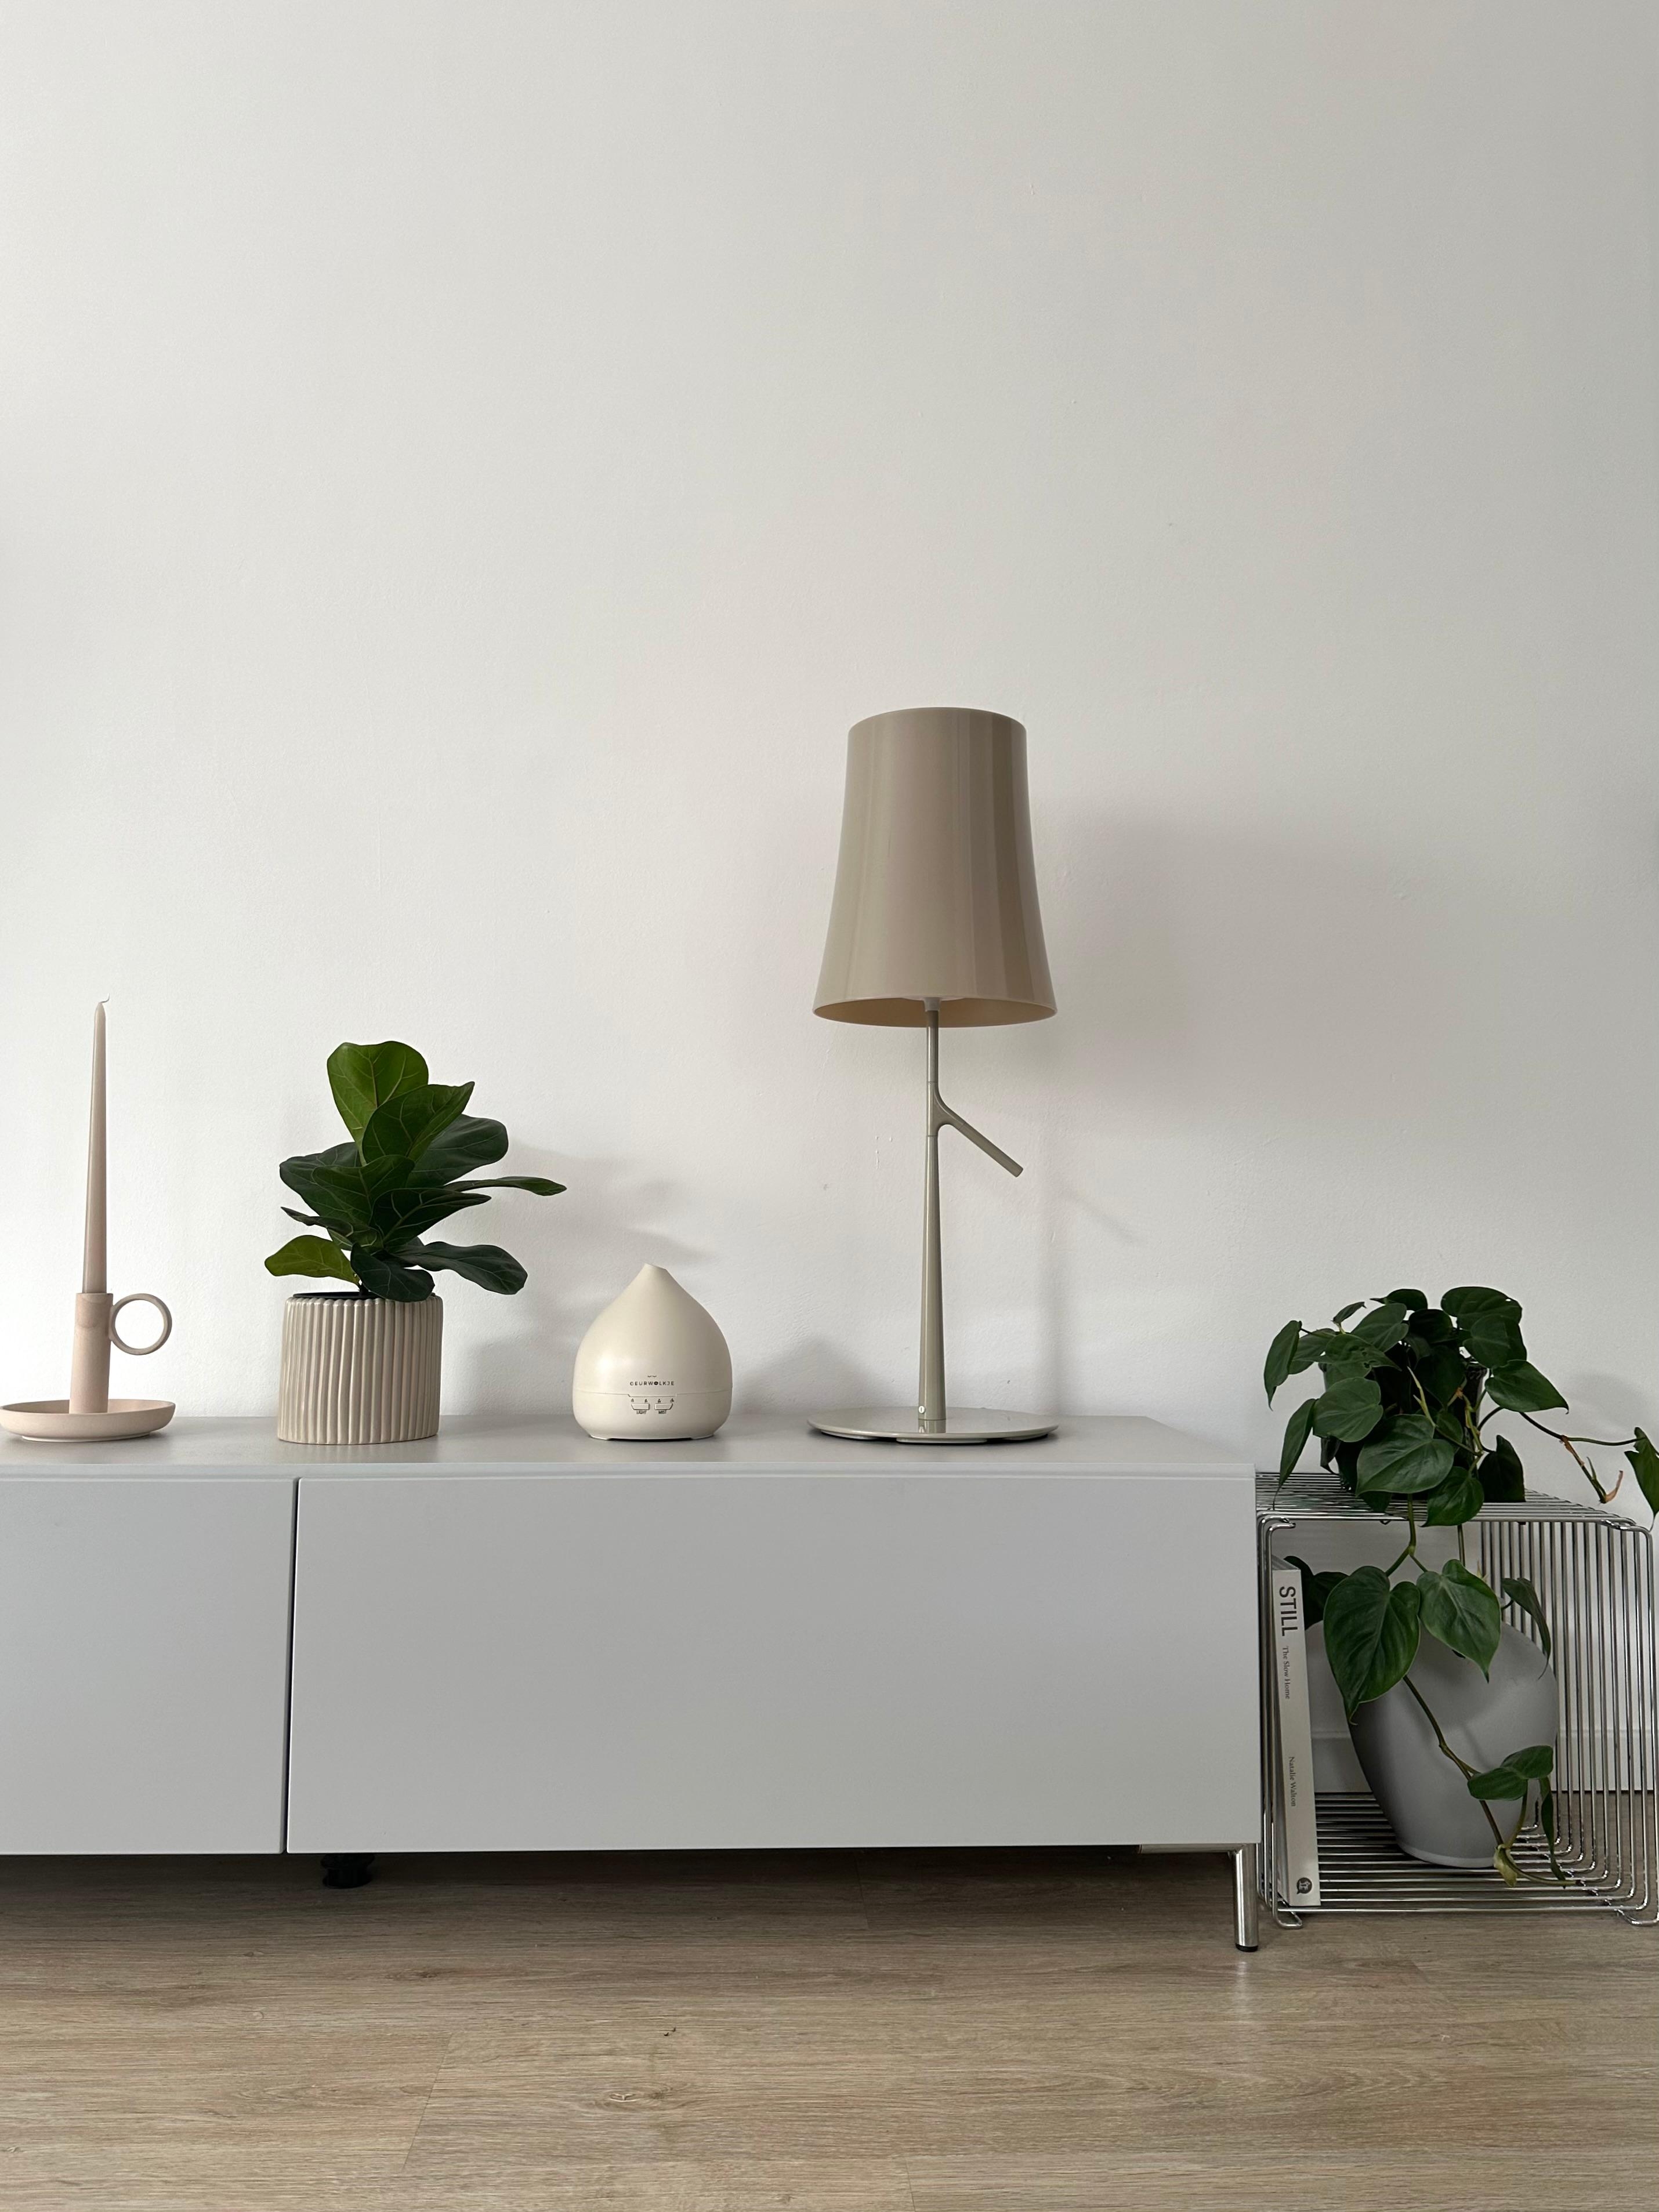 #wohnzimmer #sideboard #lowboard #pflanzenliebe #dekoideen #stehlampe #diffuser #greymeetsgreen